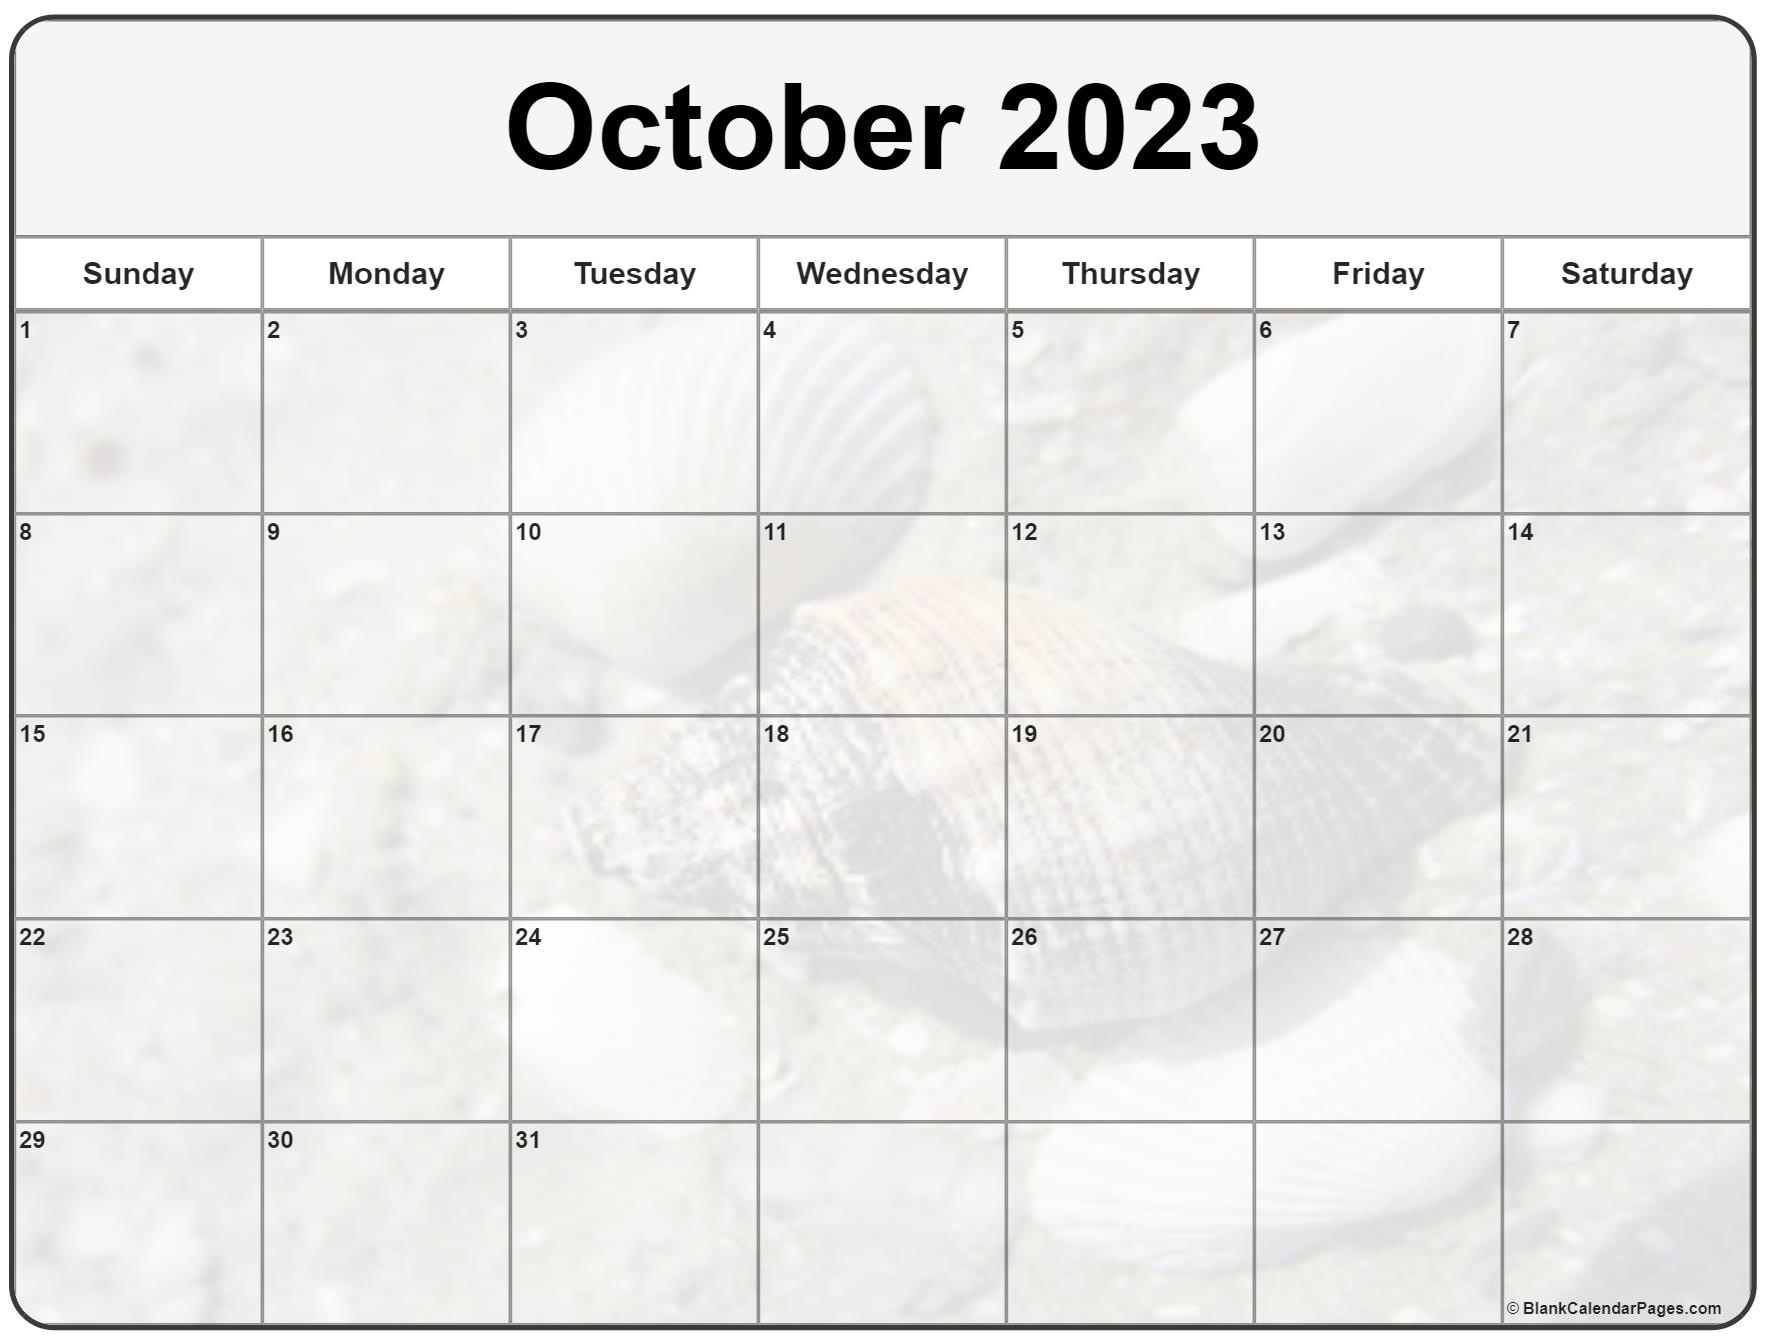 october 2023 calendar free printable calendar - october 2023 calendar ...